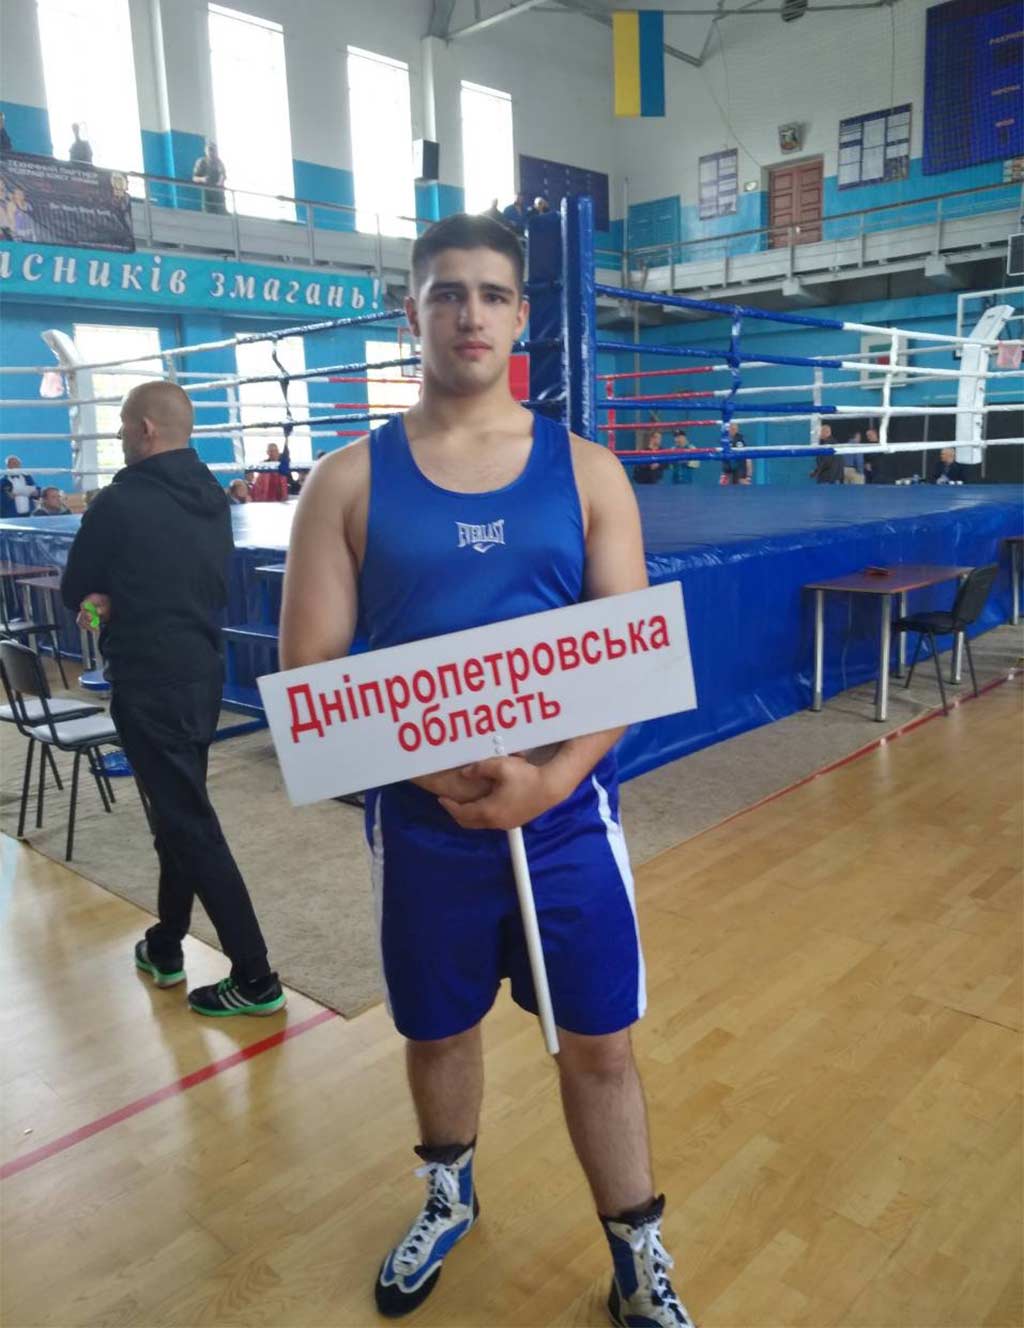 Представники університету зі всеукраїнських змагань з боксу привезли дві бронзові медалі